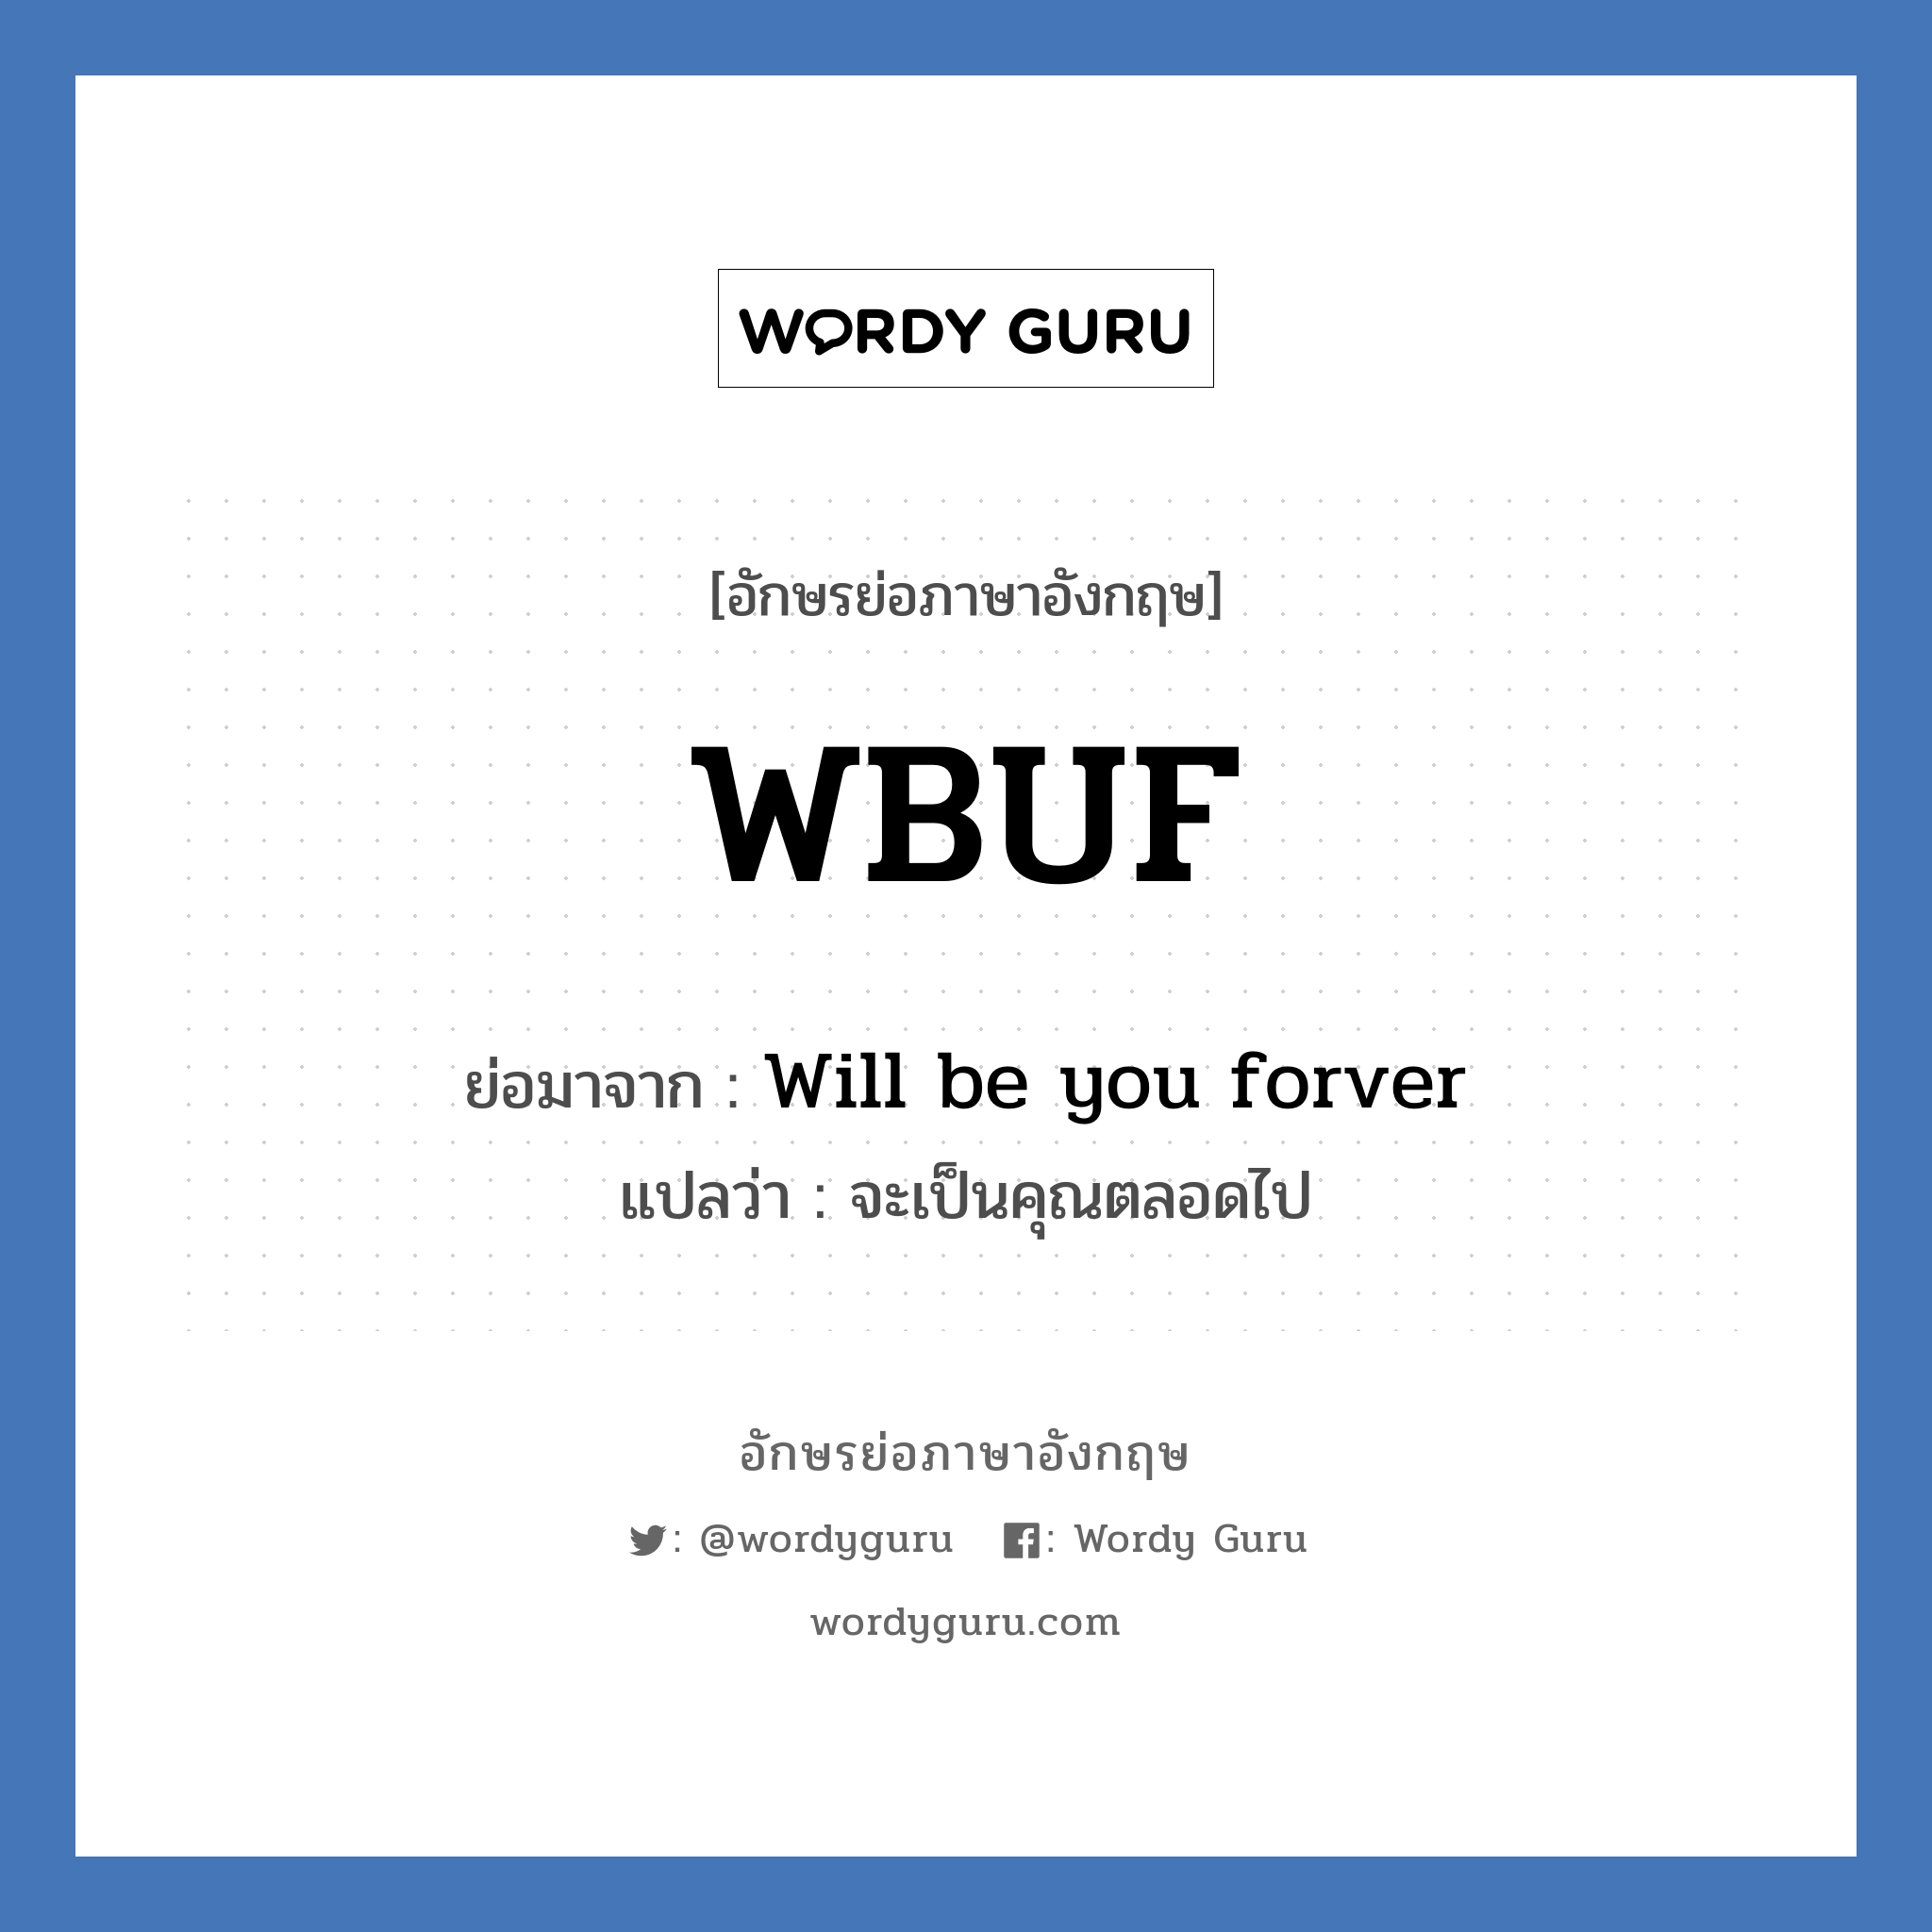 Will be you forver คำย่อคือ? แปลว่า?, อักษรย่อภาษาอังกฤษ Will be you forver ย่อมาจาก WBUF แปลว่า จะเป็นคุณตลอดไป